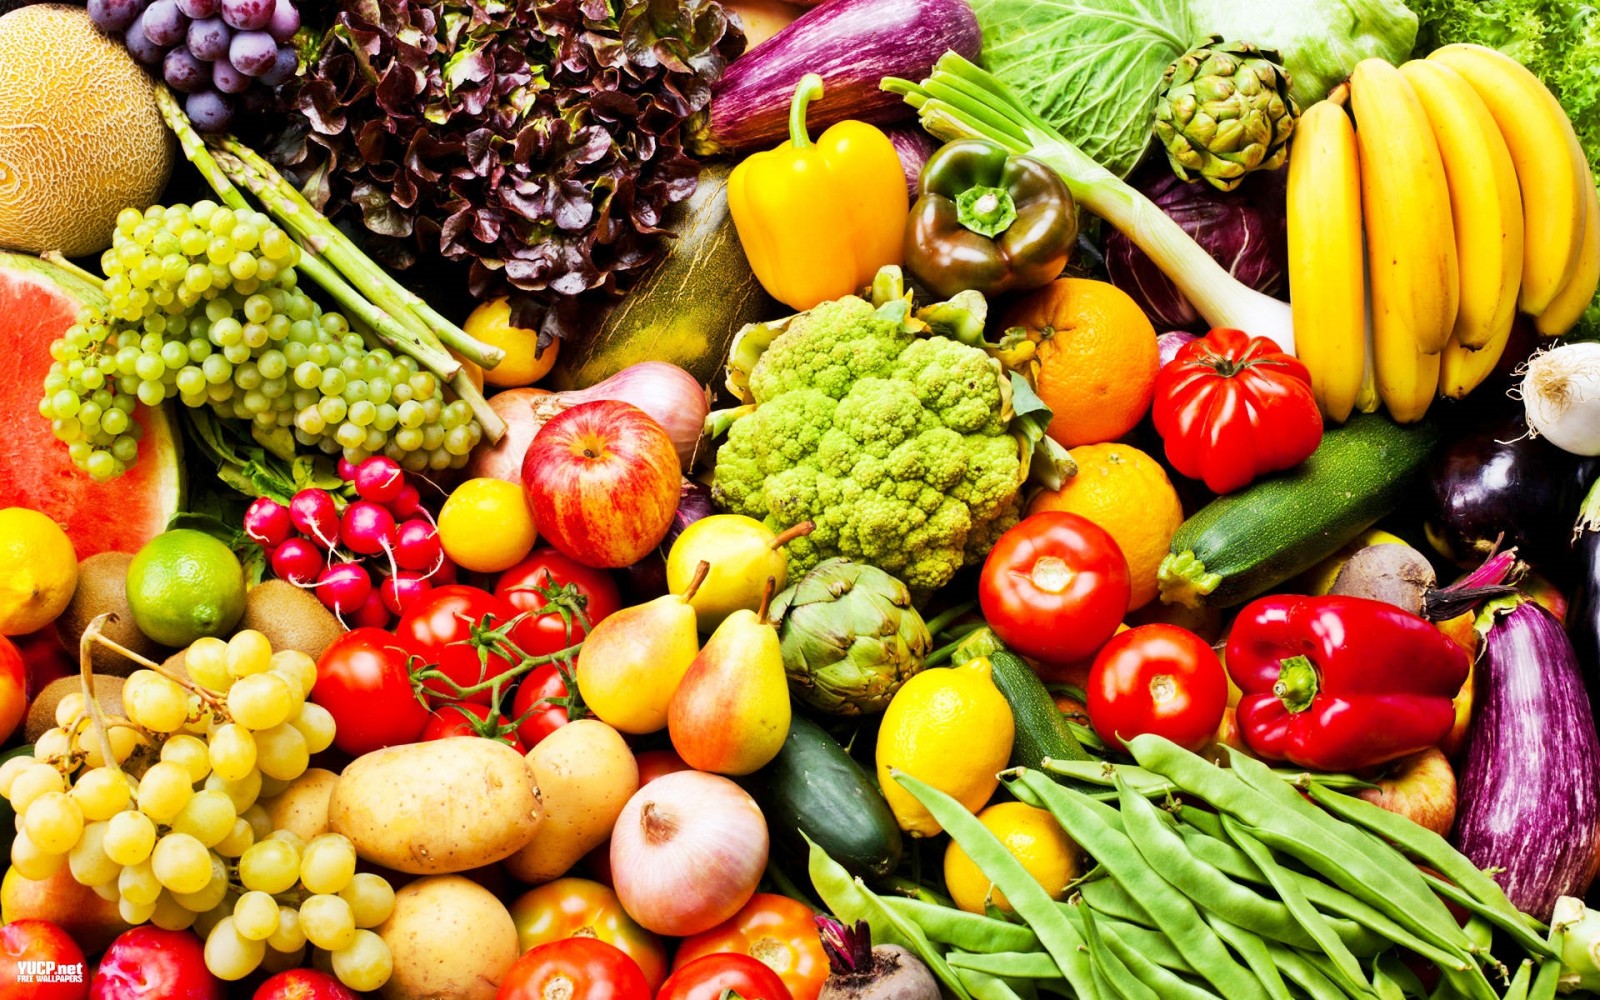 أسعار الخضروات والفاكهة اليوم في الأسواق 1